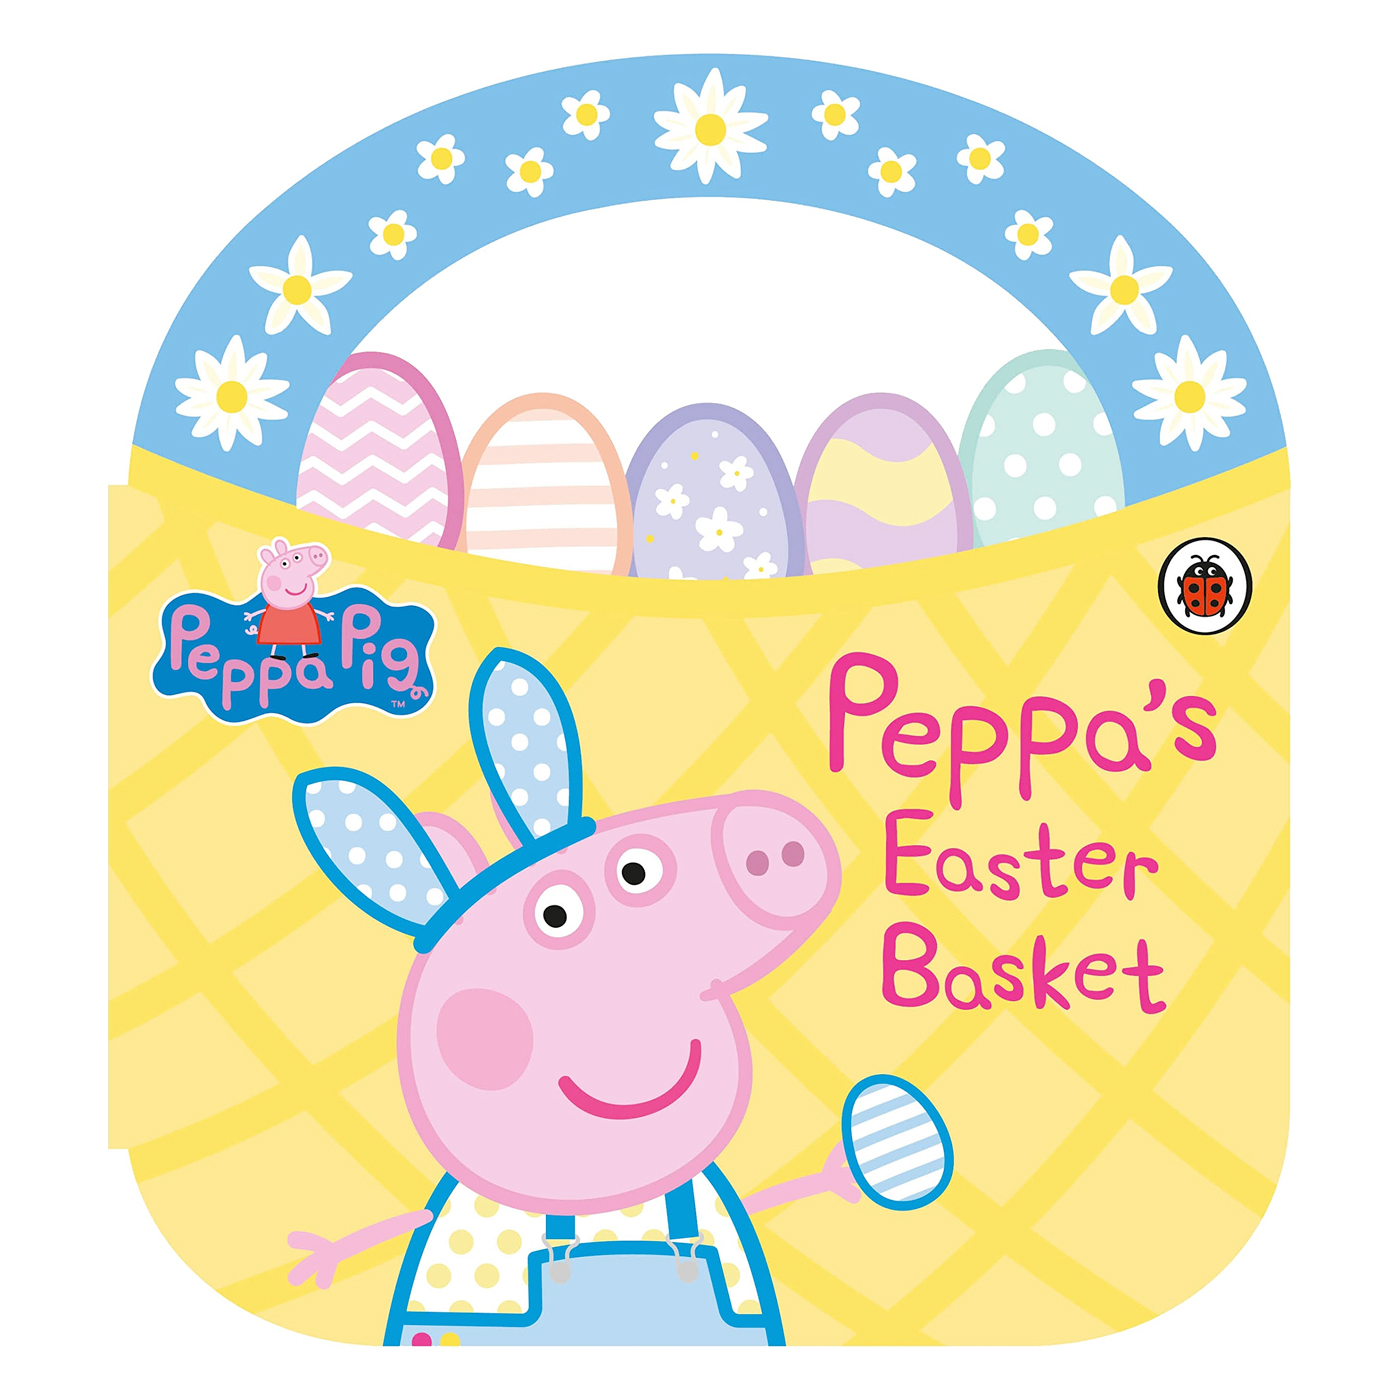 LADYBIRD Peppa Pig: Peppa's Easter Basket